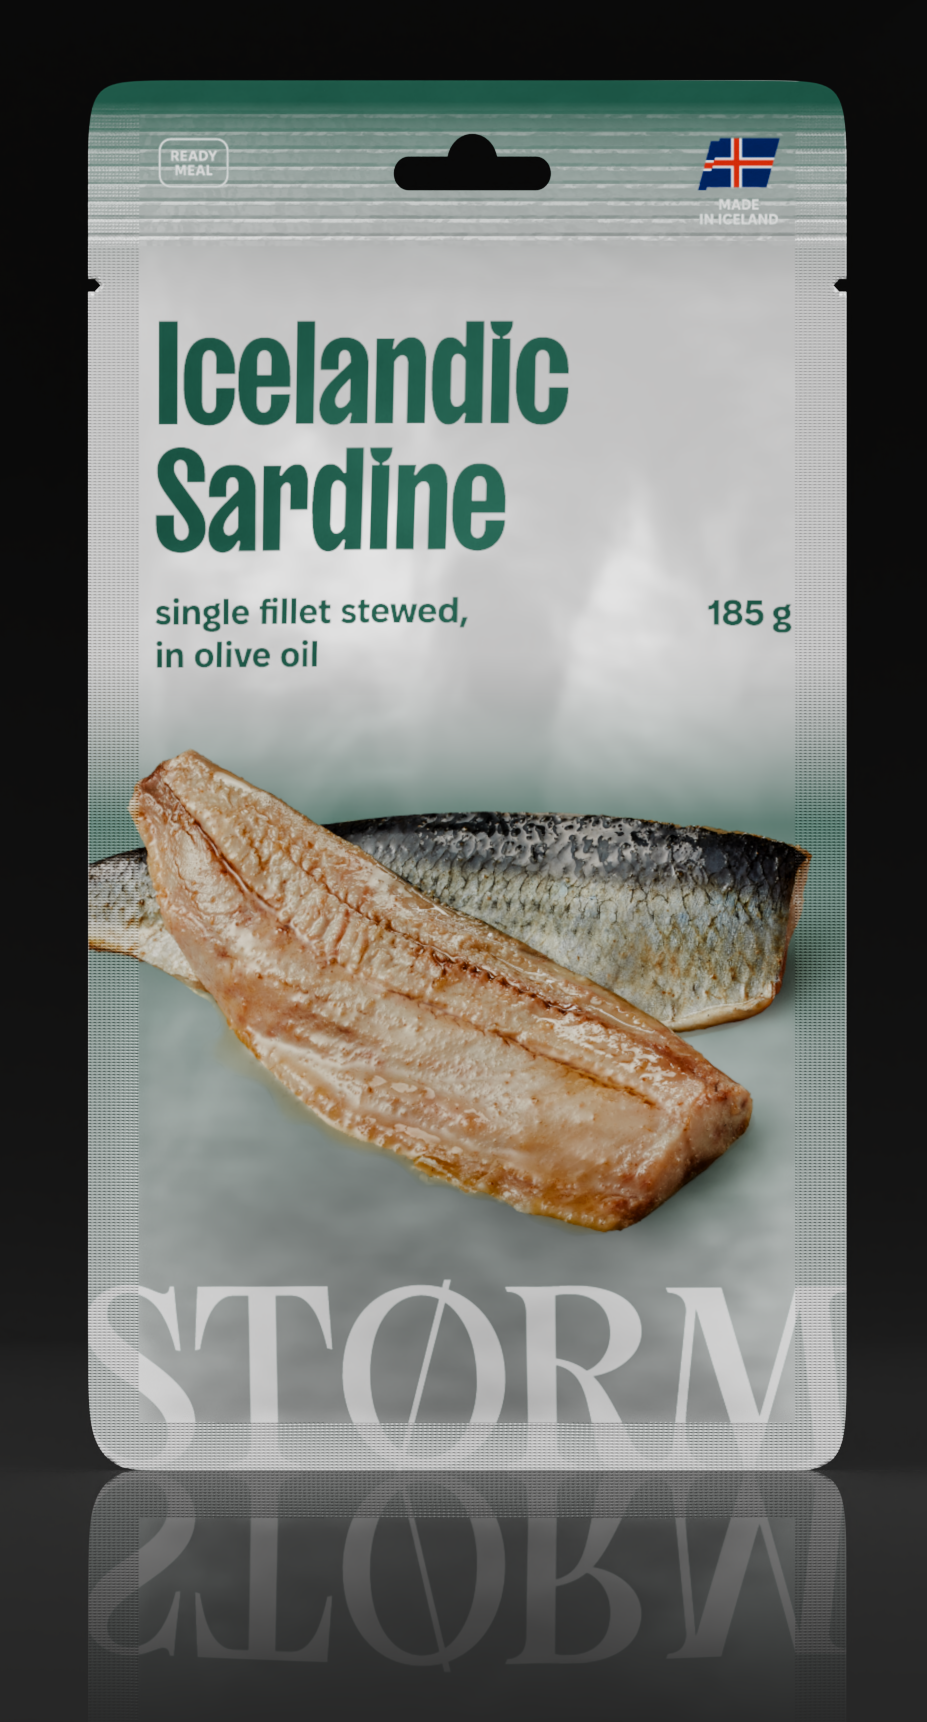 Icelandic Sardine single fillet stewed, in olive oil